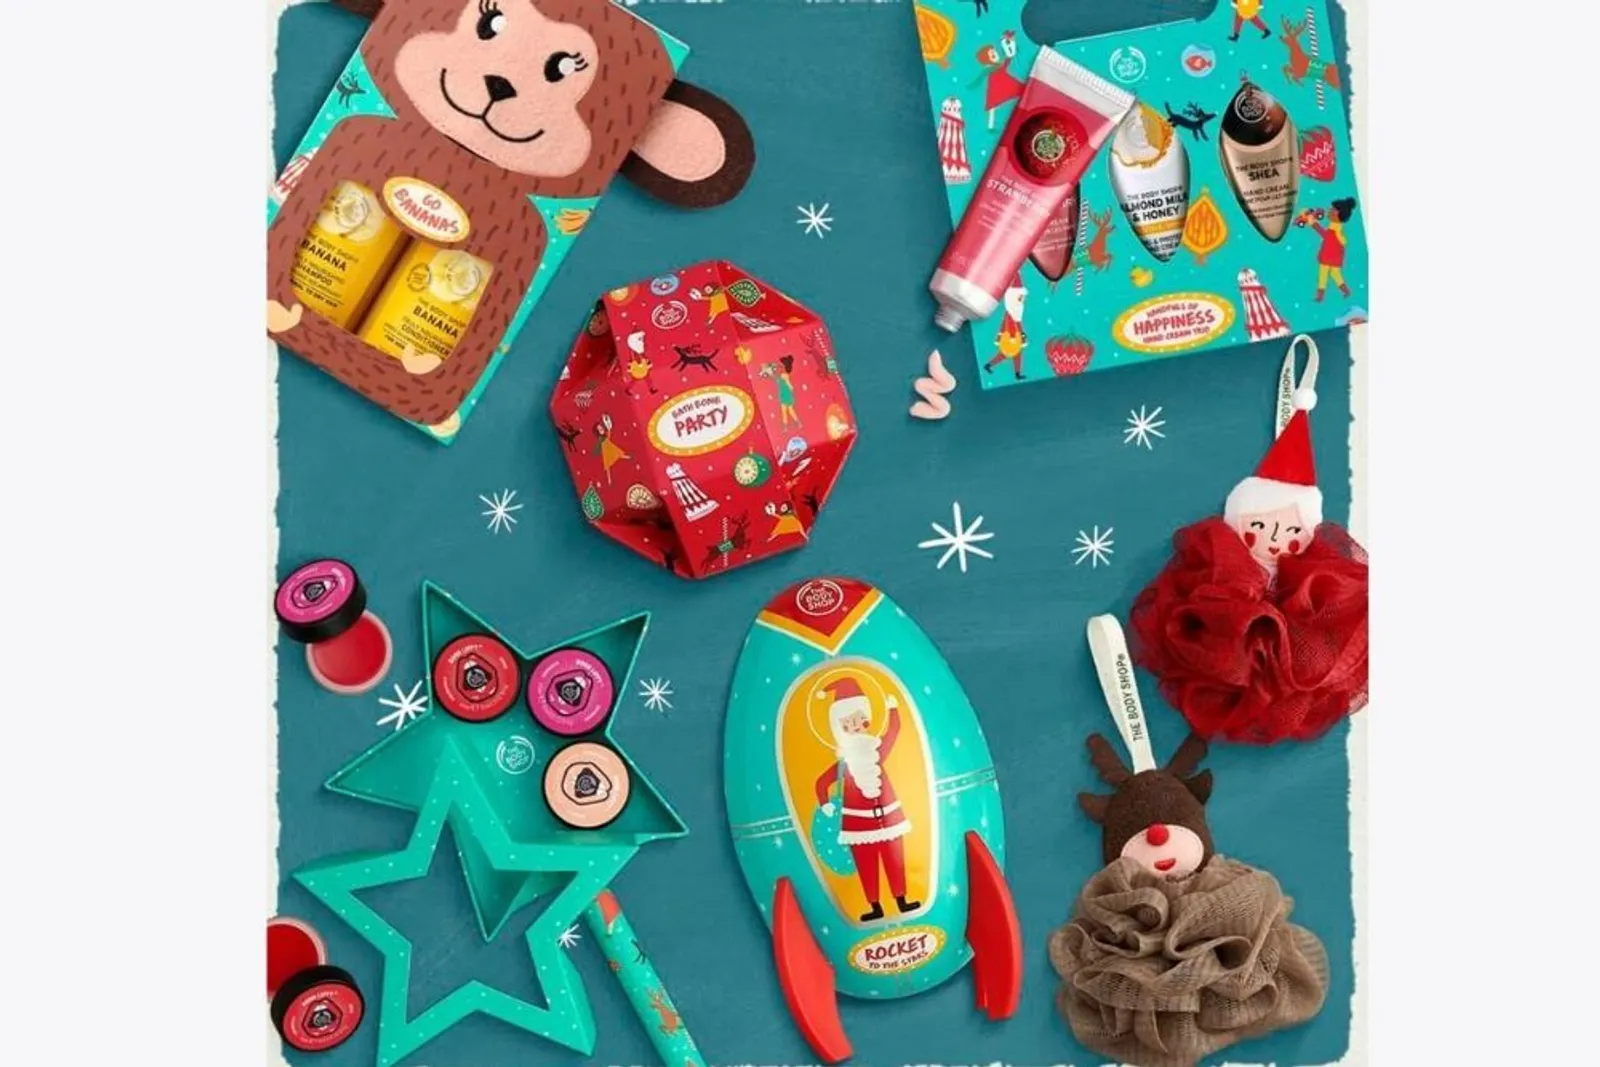 Sambut Natal, Ini Koleksi Spesial dari The Body Shop